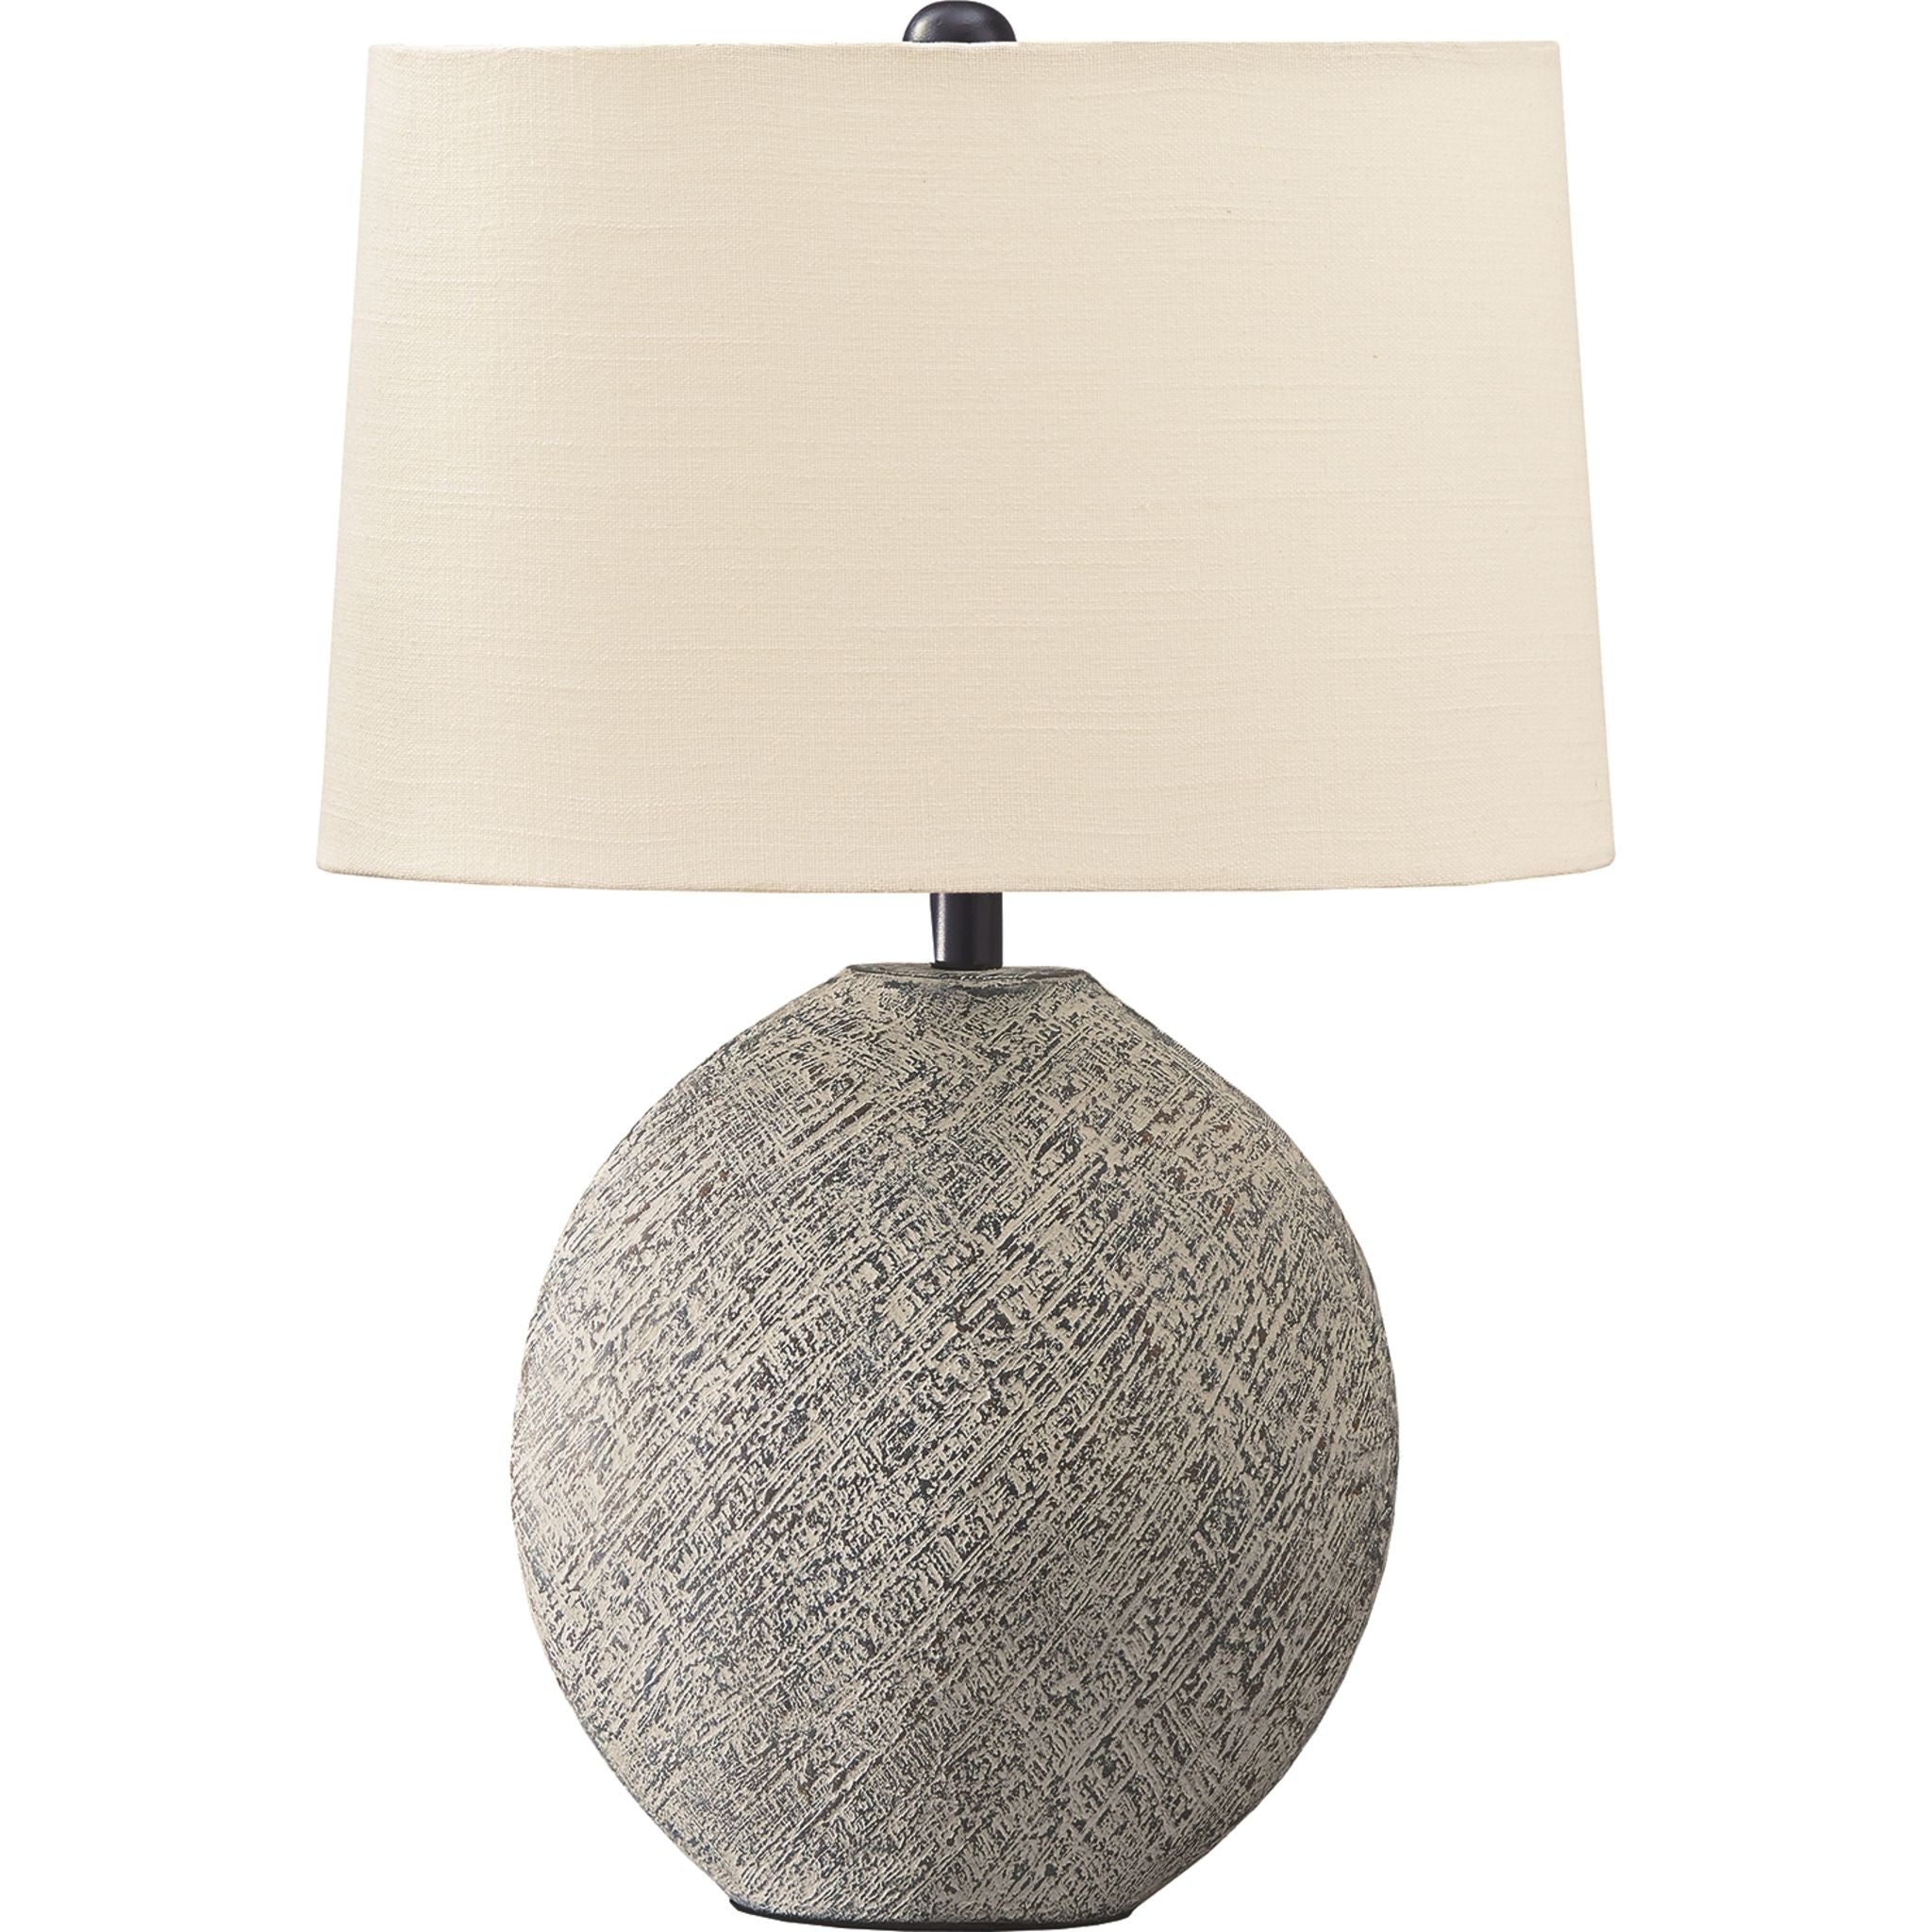 Ashley Harif Table Lamp In Beige, Size: 26"